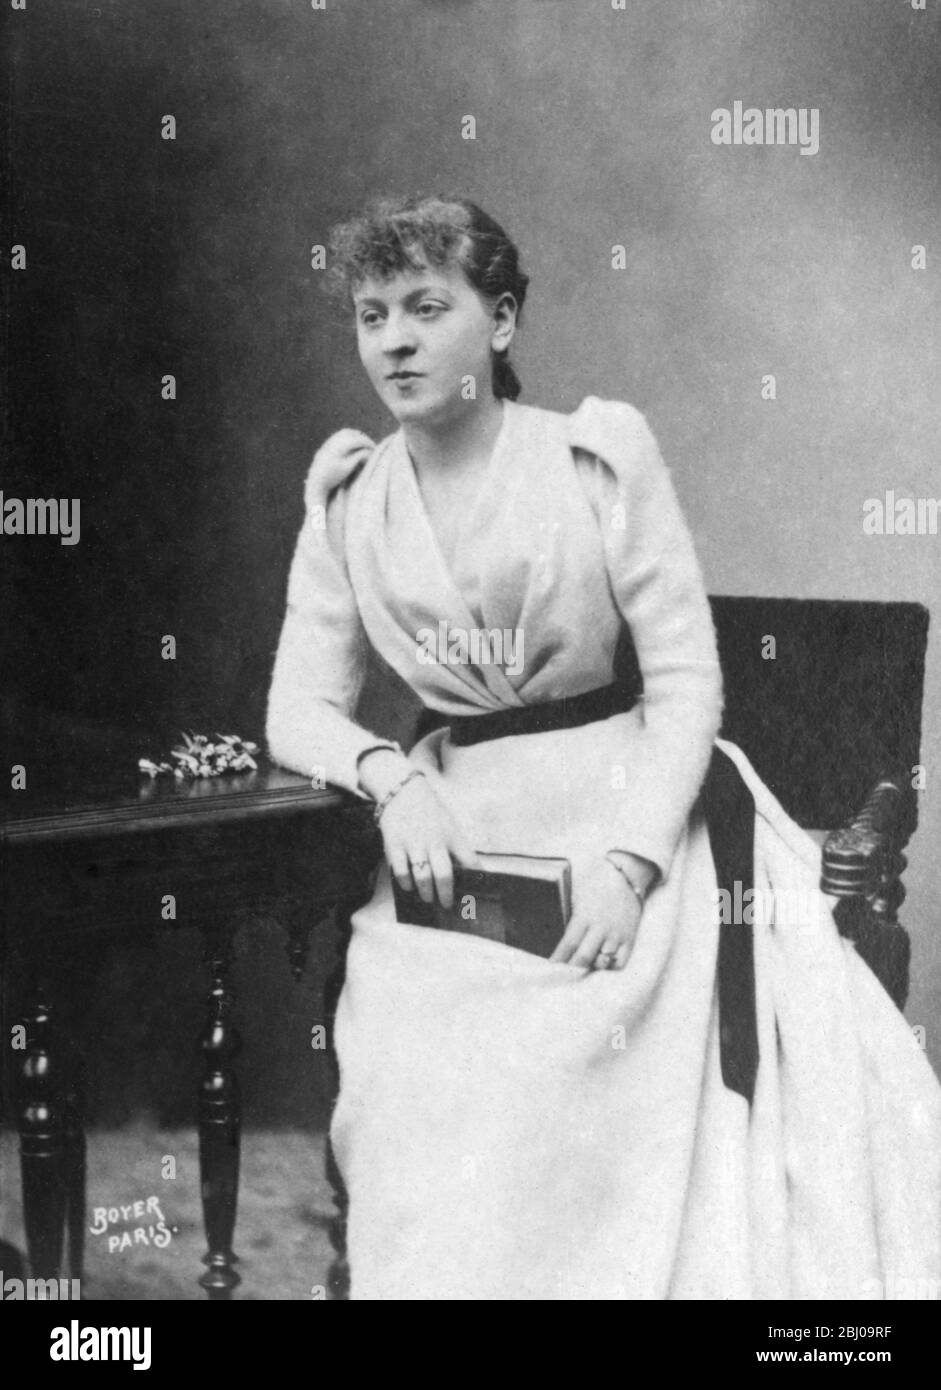 Suzanne Reichenberg (1853-1924), attrice francese, debutta nel 1868 nel ruolo di Agnes presso l'Ecole des femmes alla Comedie-Francaise. Fu regina del teatro ingenues dal 1870 al 1900. Il dessert Crepe Suzette è stato chiamato in suo onore. - Foto Stock